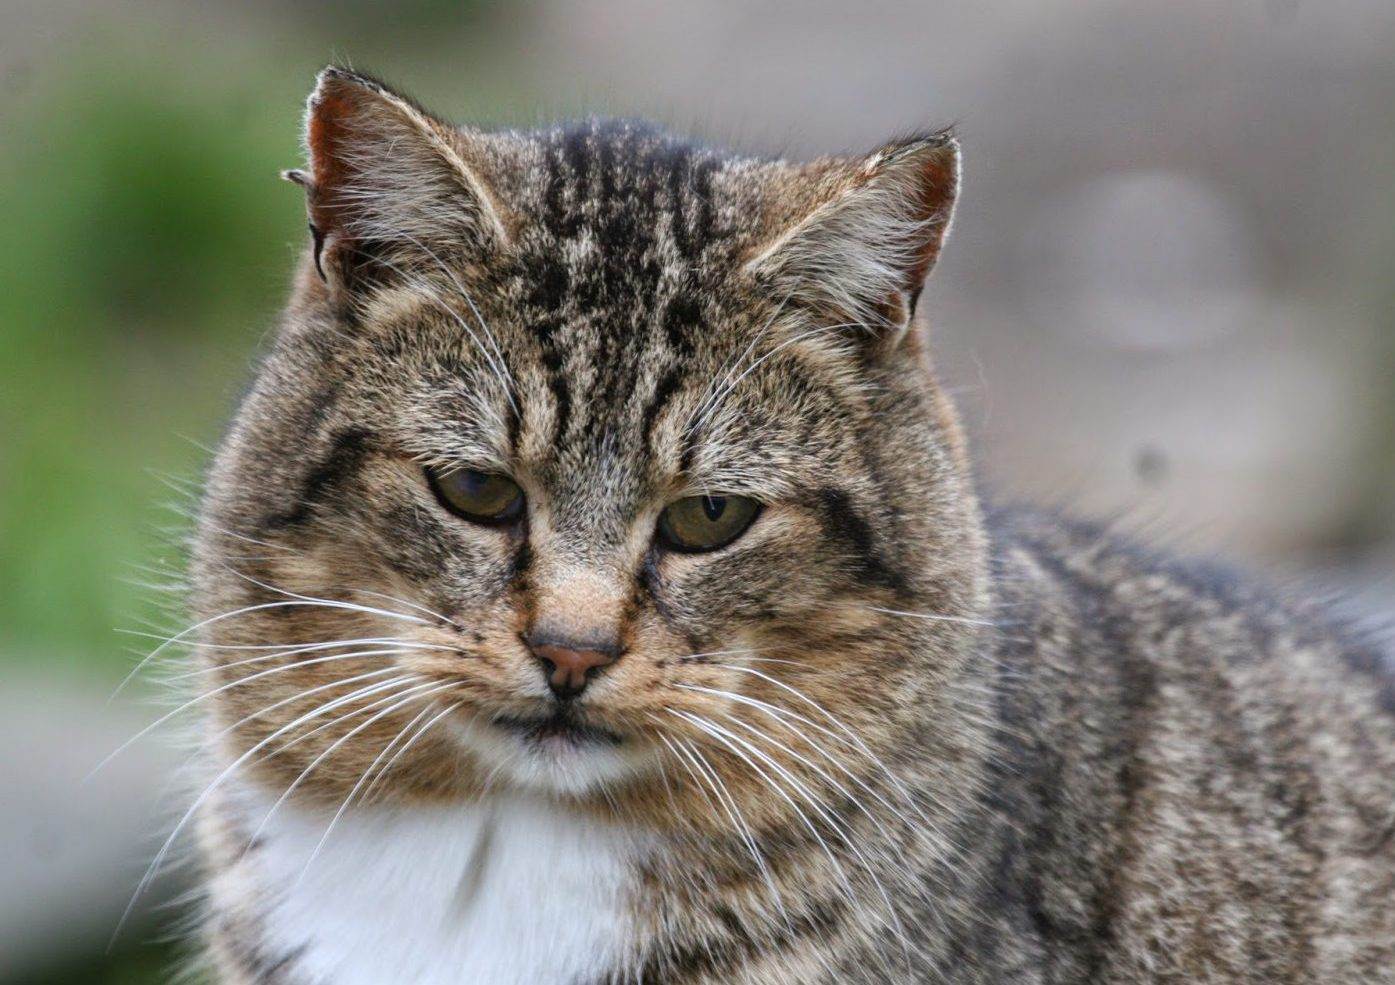 Лесной европейский кот: описание, характер, среда обитания и образ жизни, фото